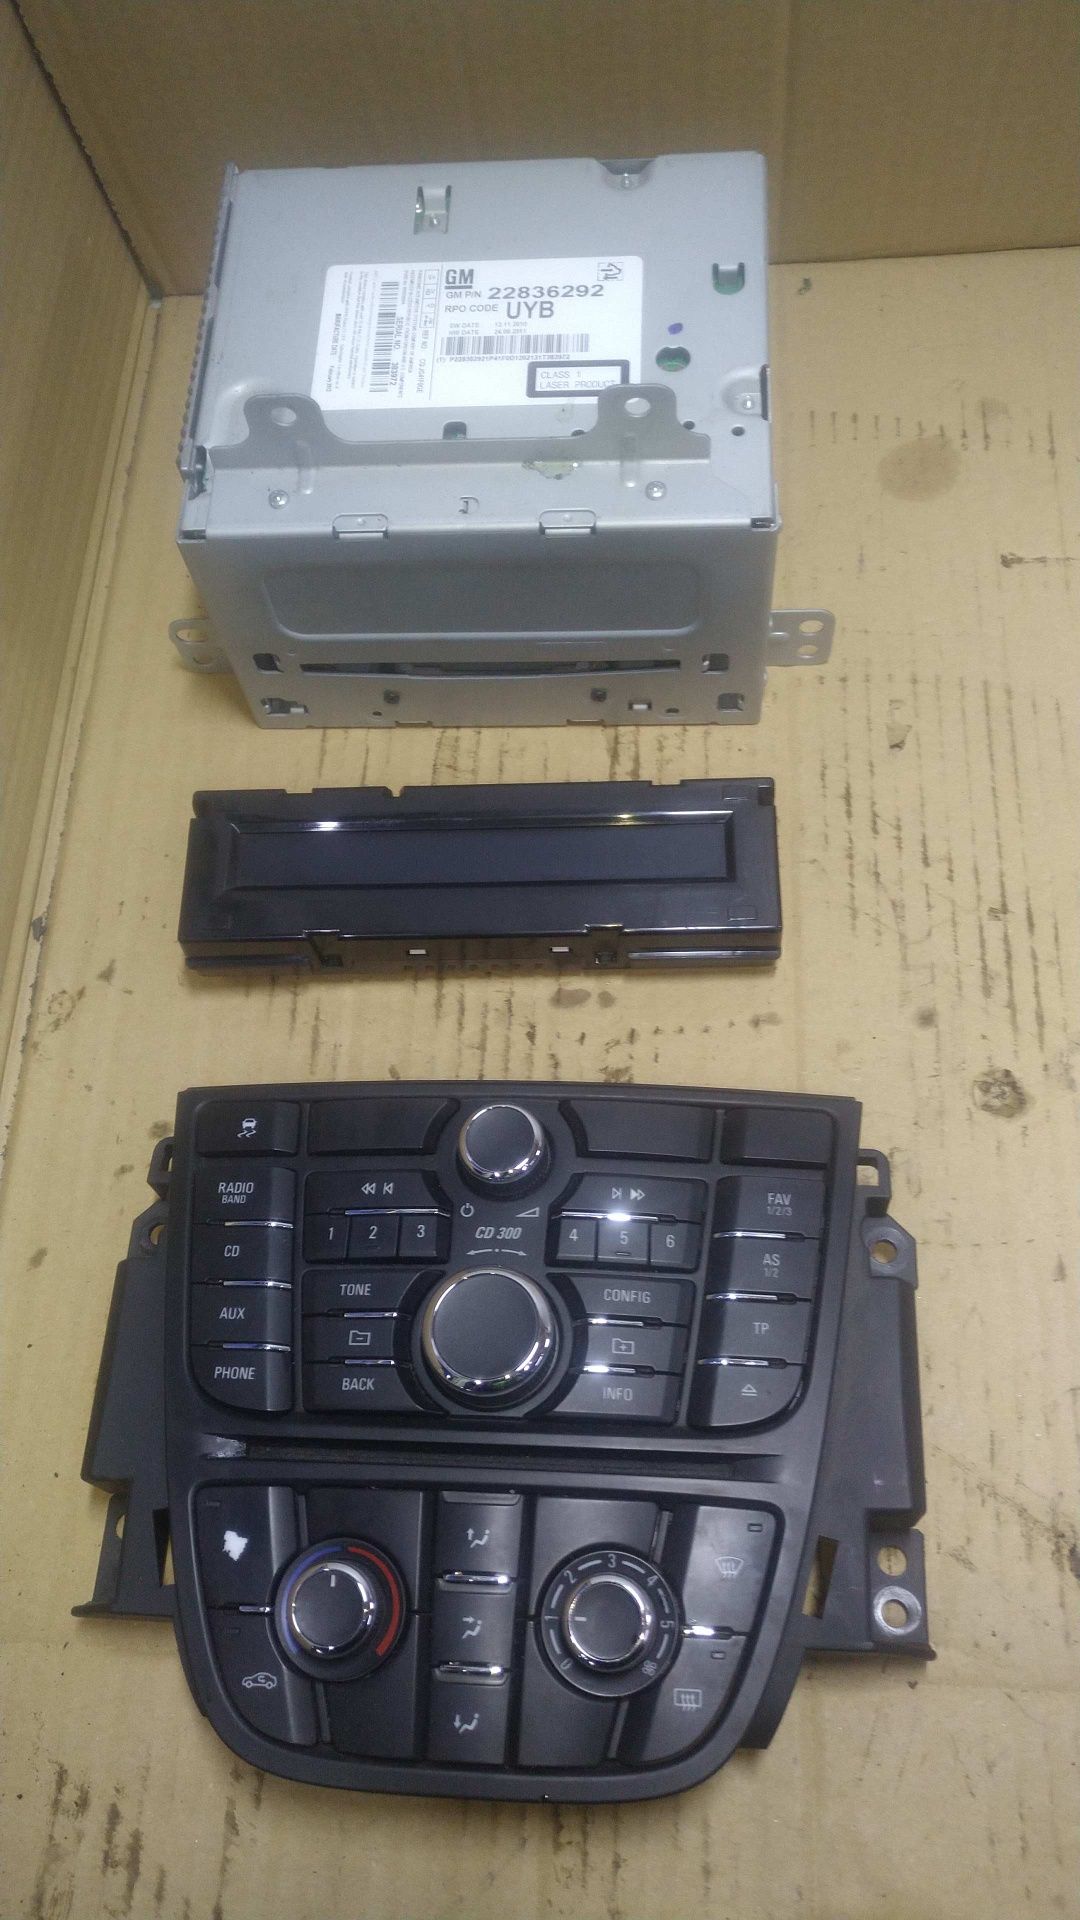 / Meriva B radio fabryczne wyświetlacz panel sterowania